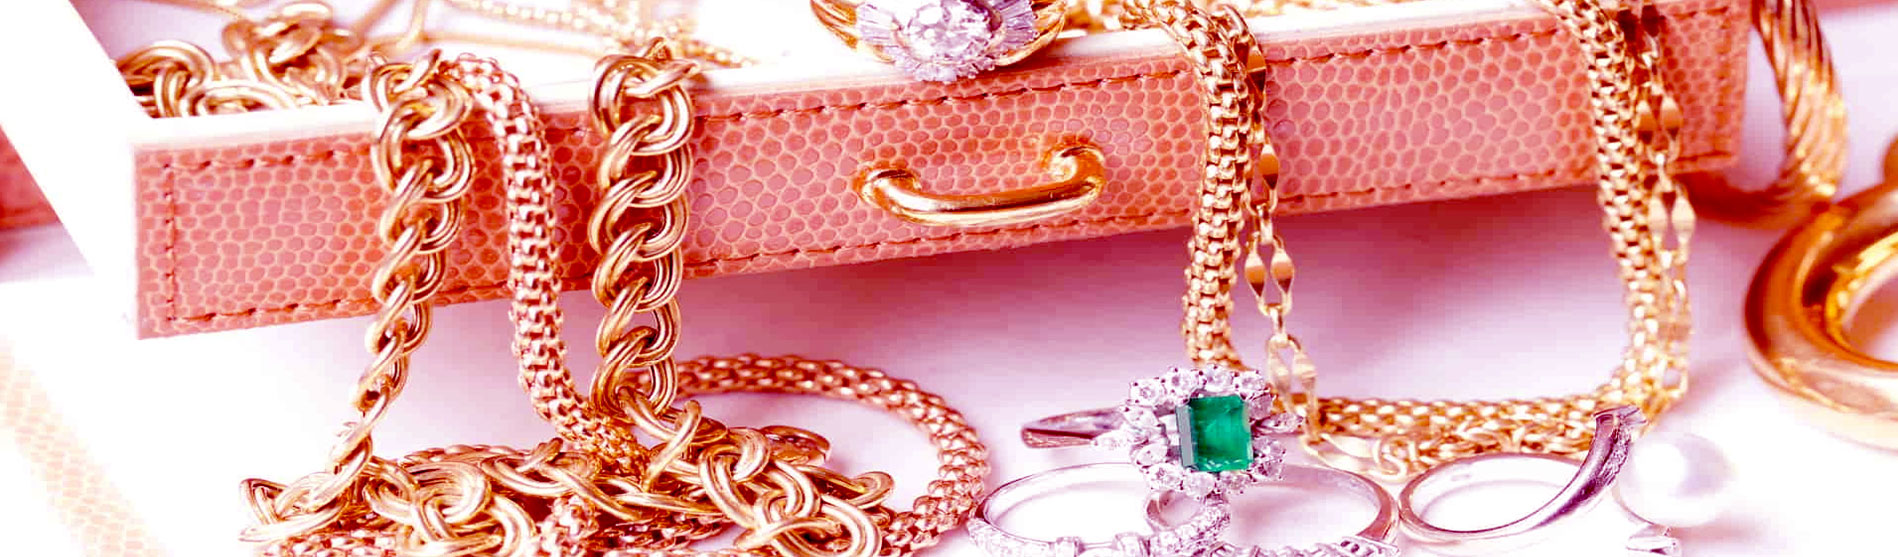 les boutiques en ligne de bijoux en or ou fantaisie